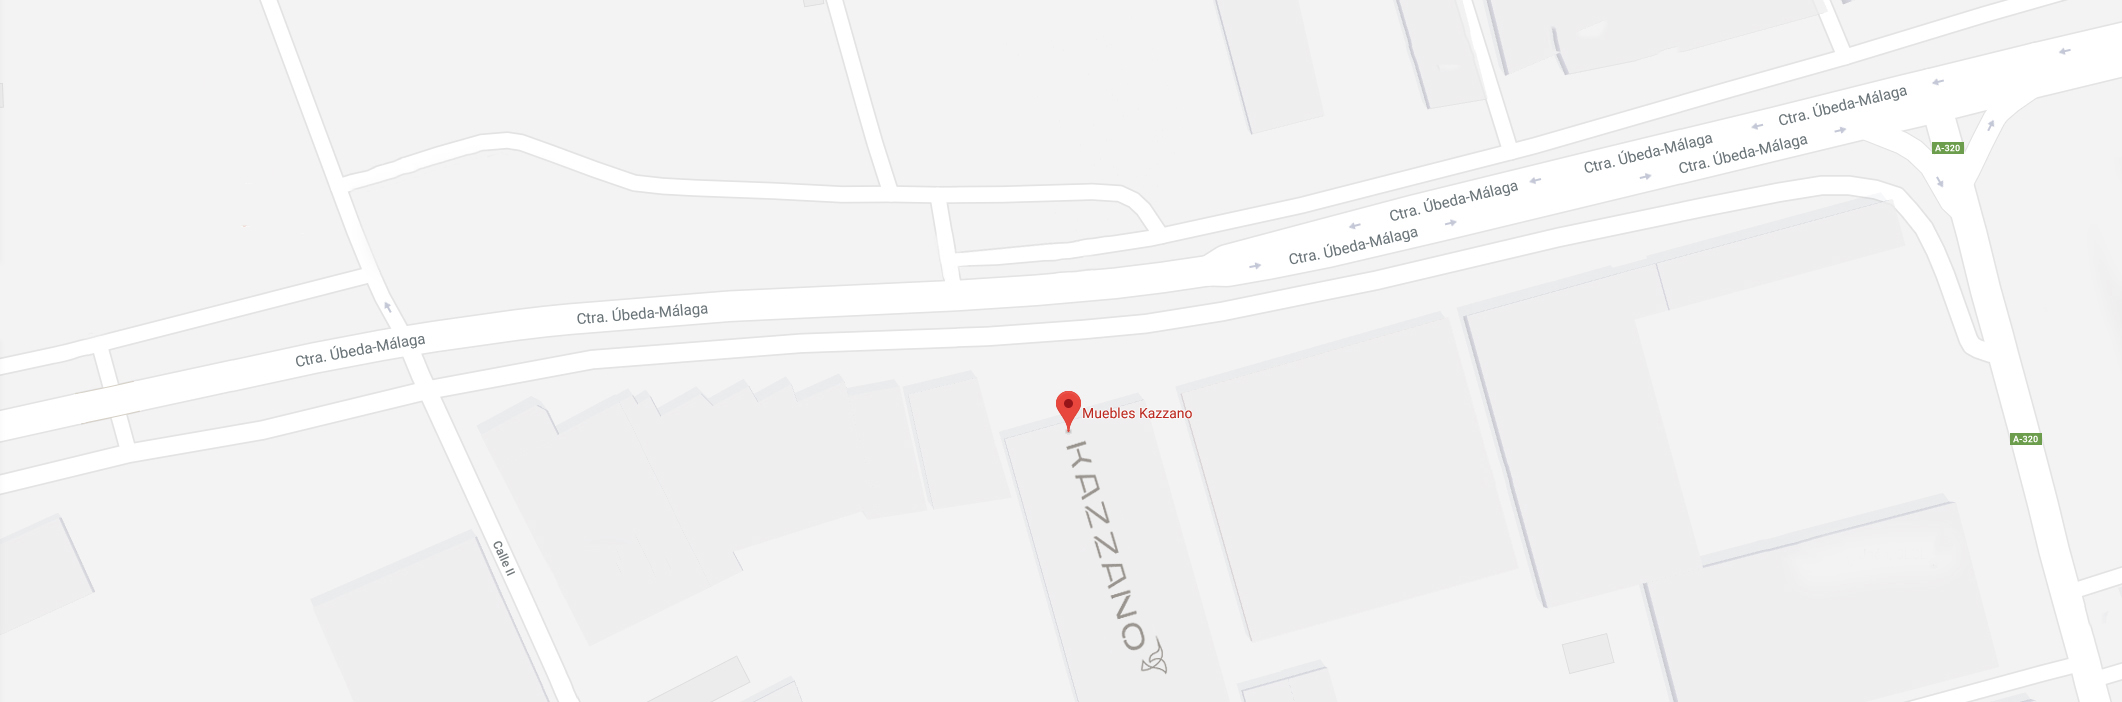 Abrir ubicación de Kazzano en Google Maps